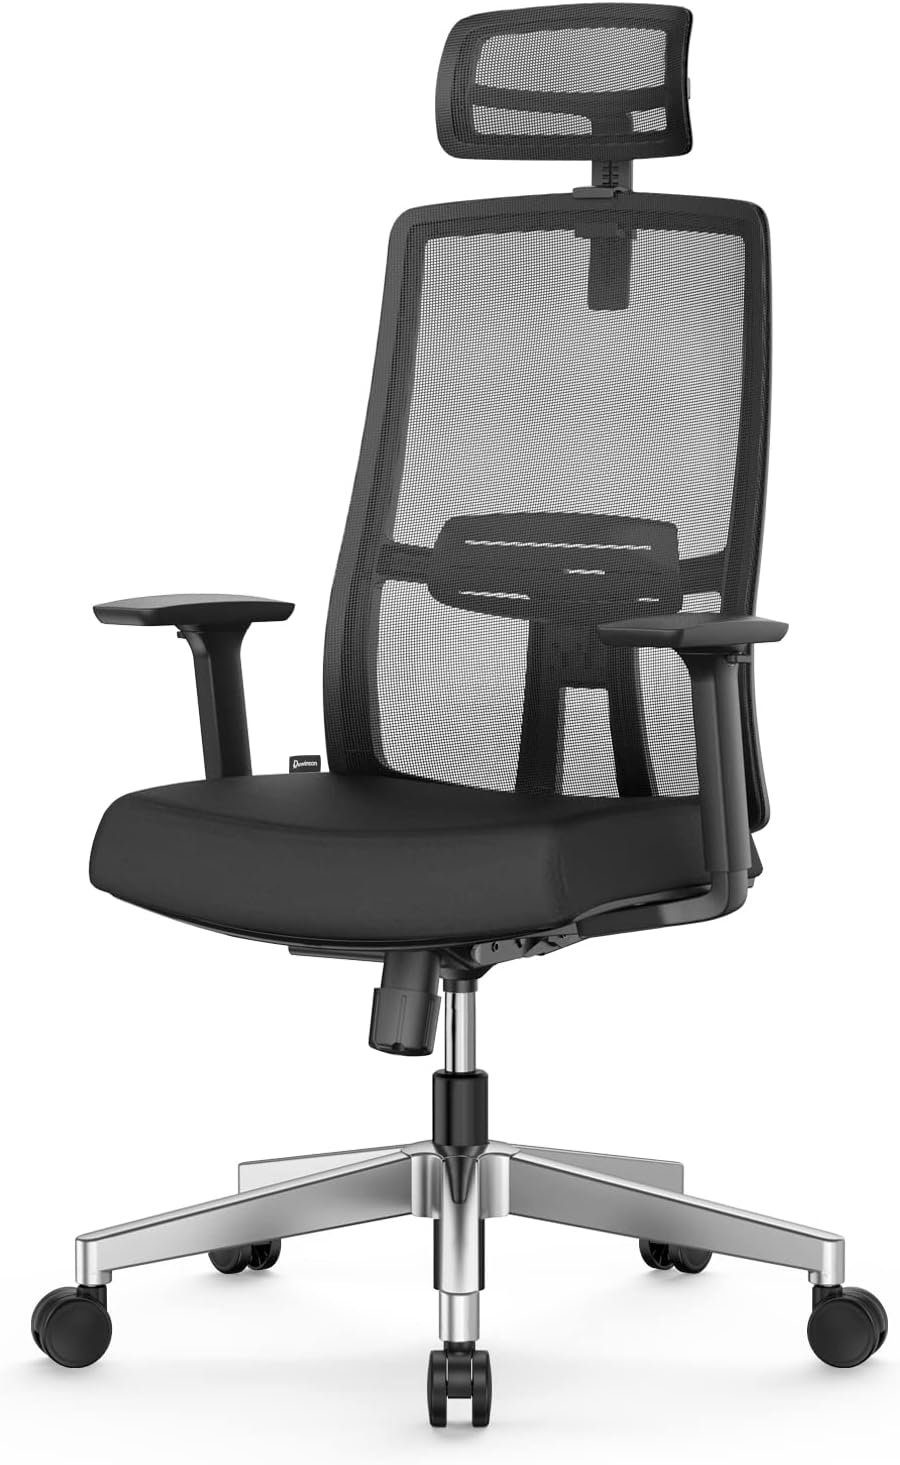 FelixKing Bürostuhl (Ergonomischer Burostuhl,Schreibtischstuhl mit Verstellbarer Sitz), Ergonomischer Bürostuhl Kopfstütze Und Gepolsterter Lordosenstütze